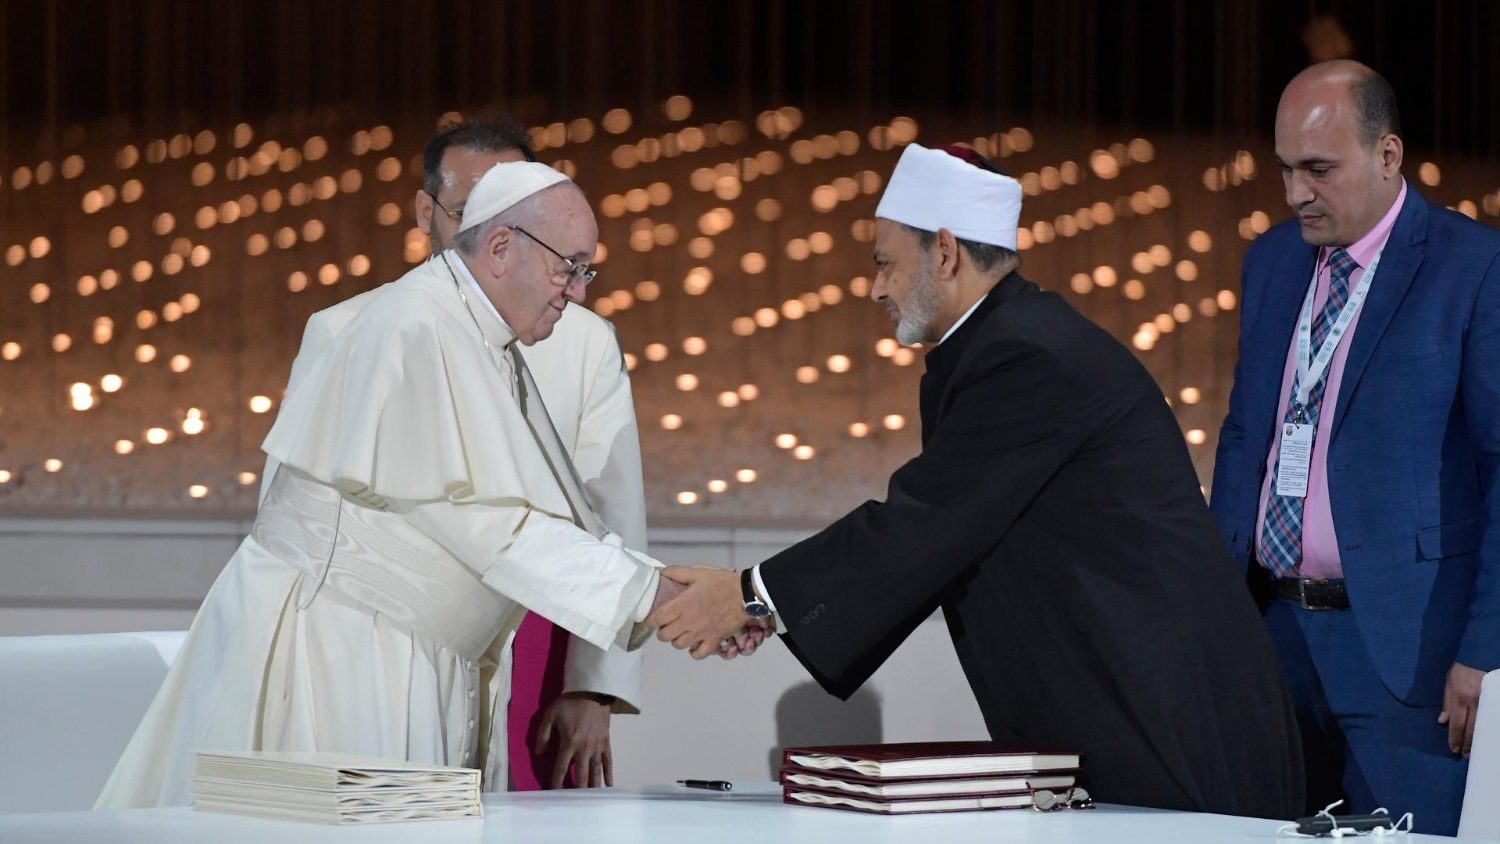 Quelque chose de l'esprit de la rencontre du pape François avec les musulmans d'Abou Dhabi, dans cette caricature ?  Cq5dam.thumbnail.cropped.1500.844